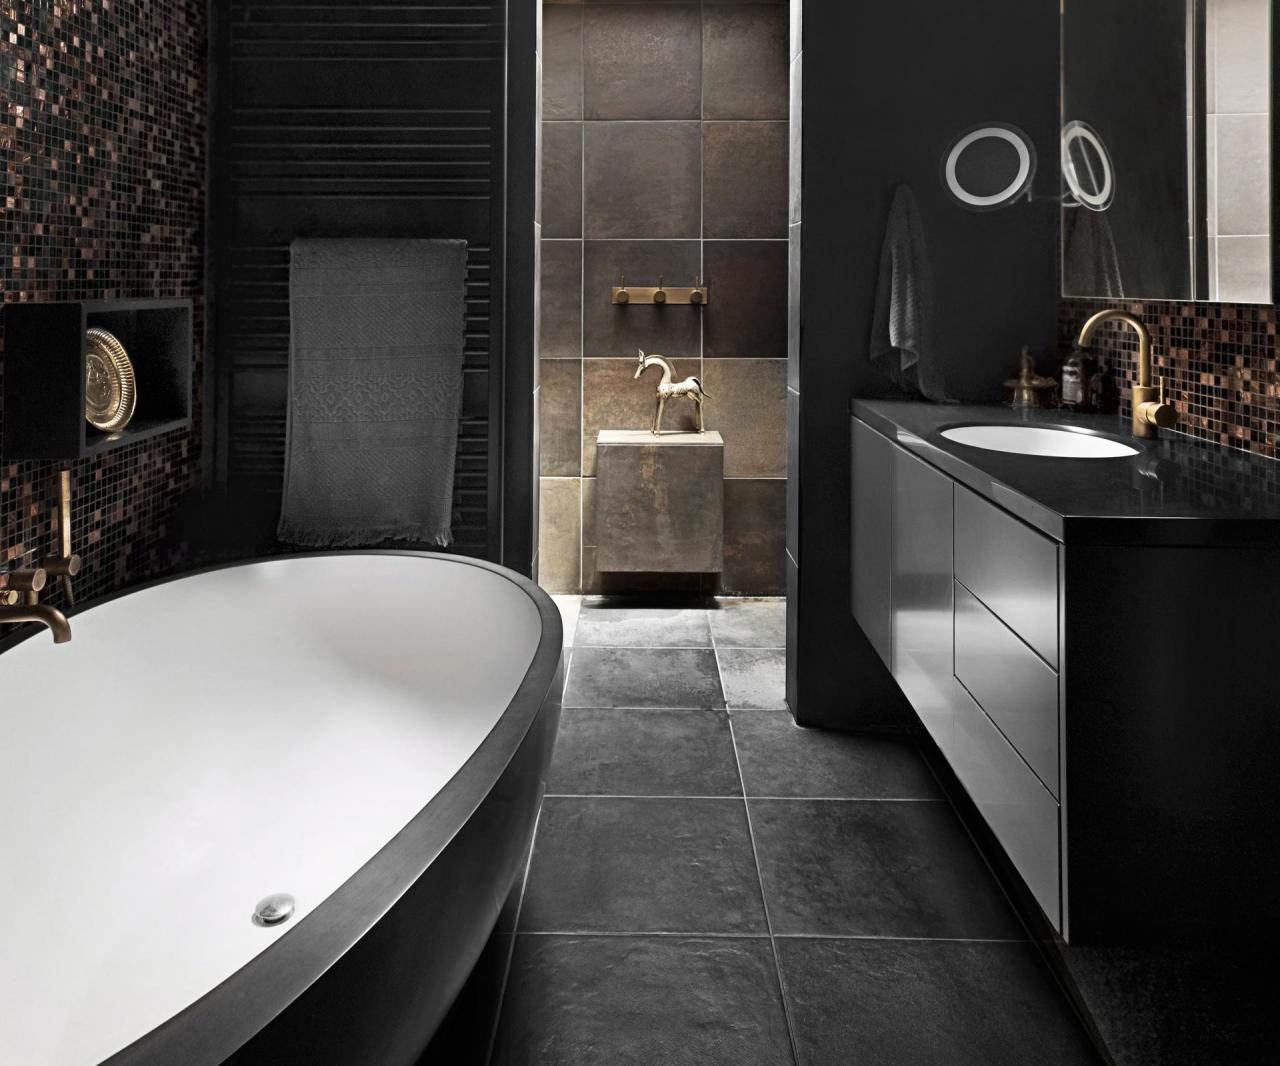 A Black Hole Moody Bathroom Design Trends Decor + Design Show